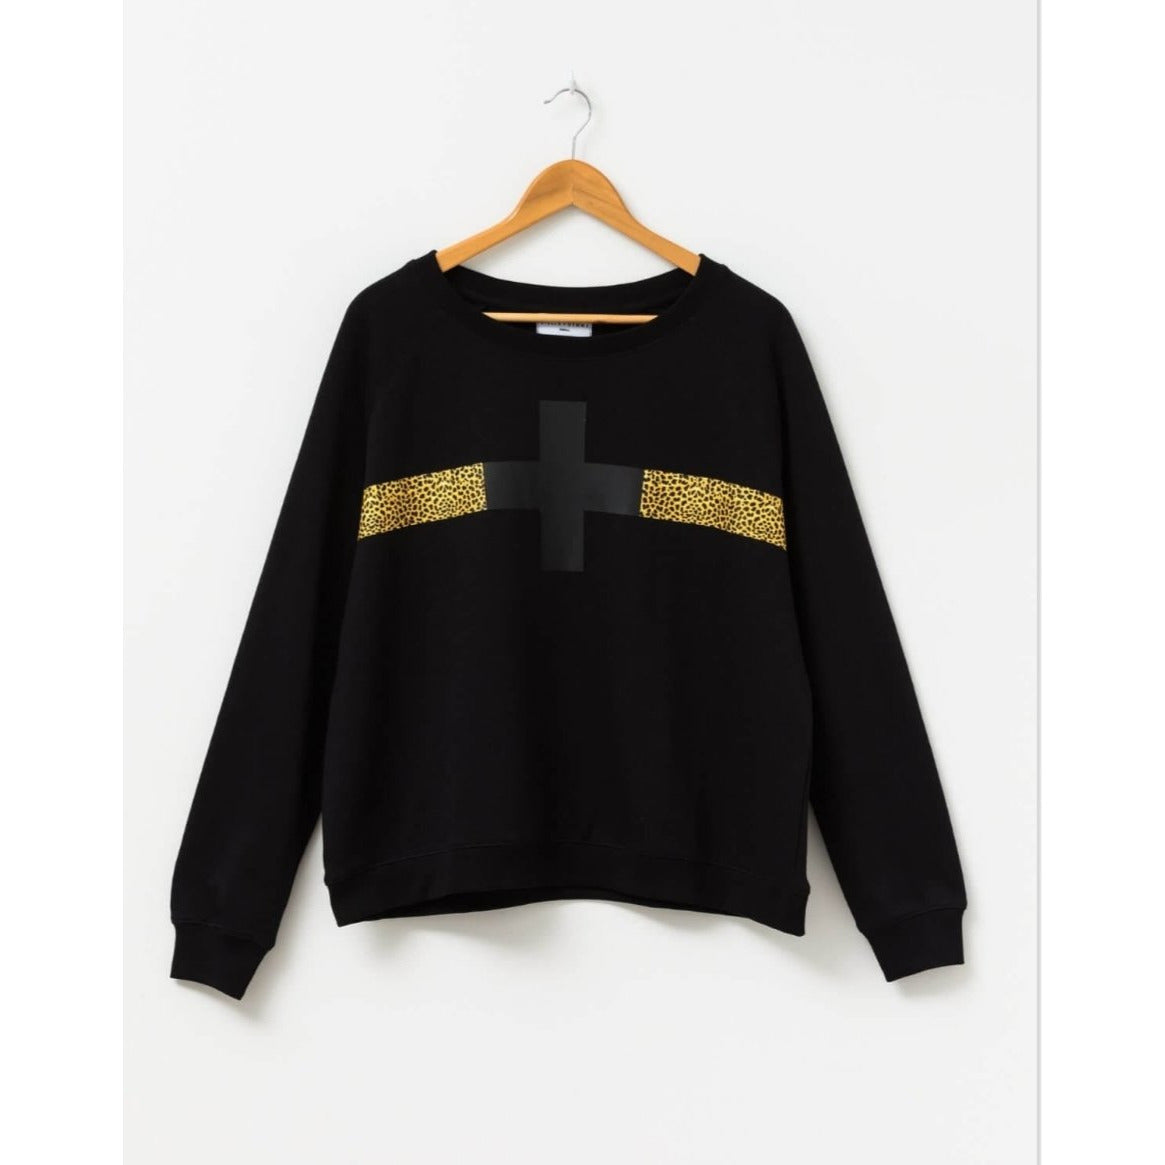 Black Cross with Leopard Stripe Sweater